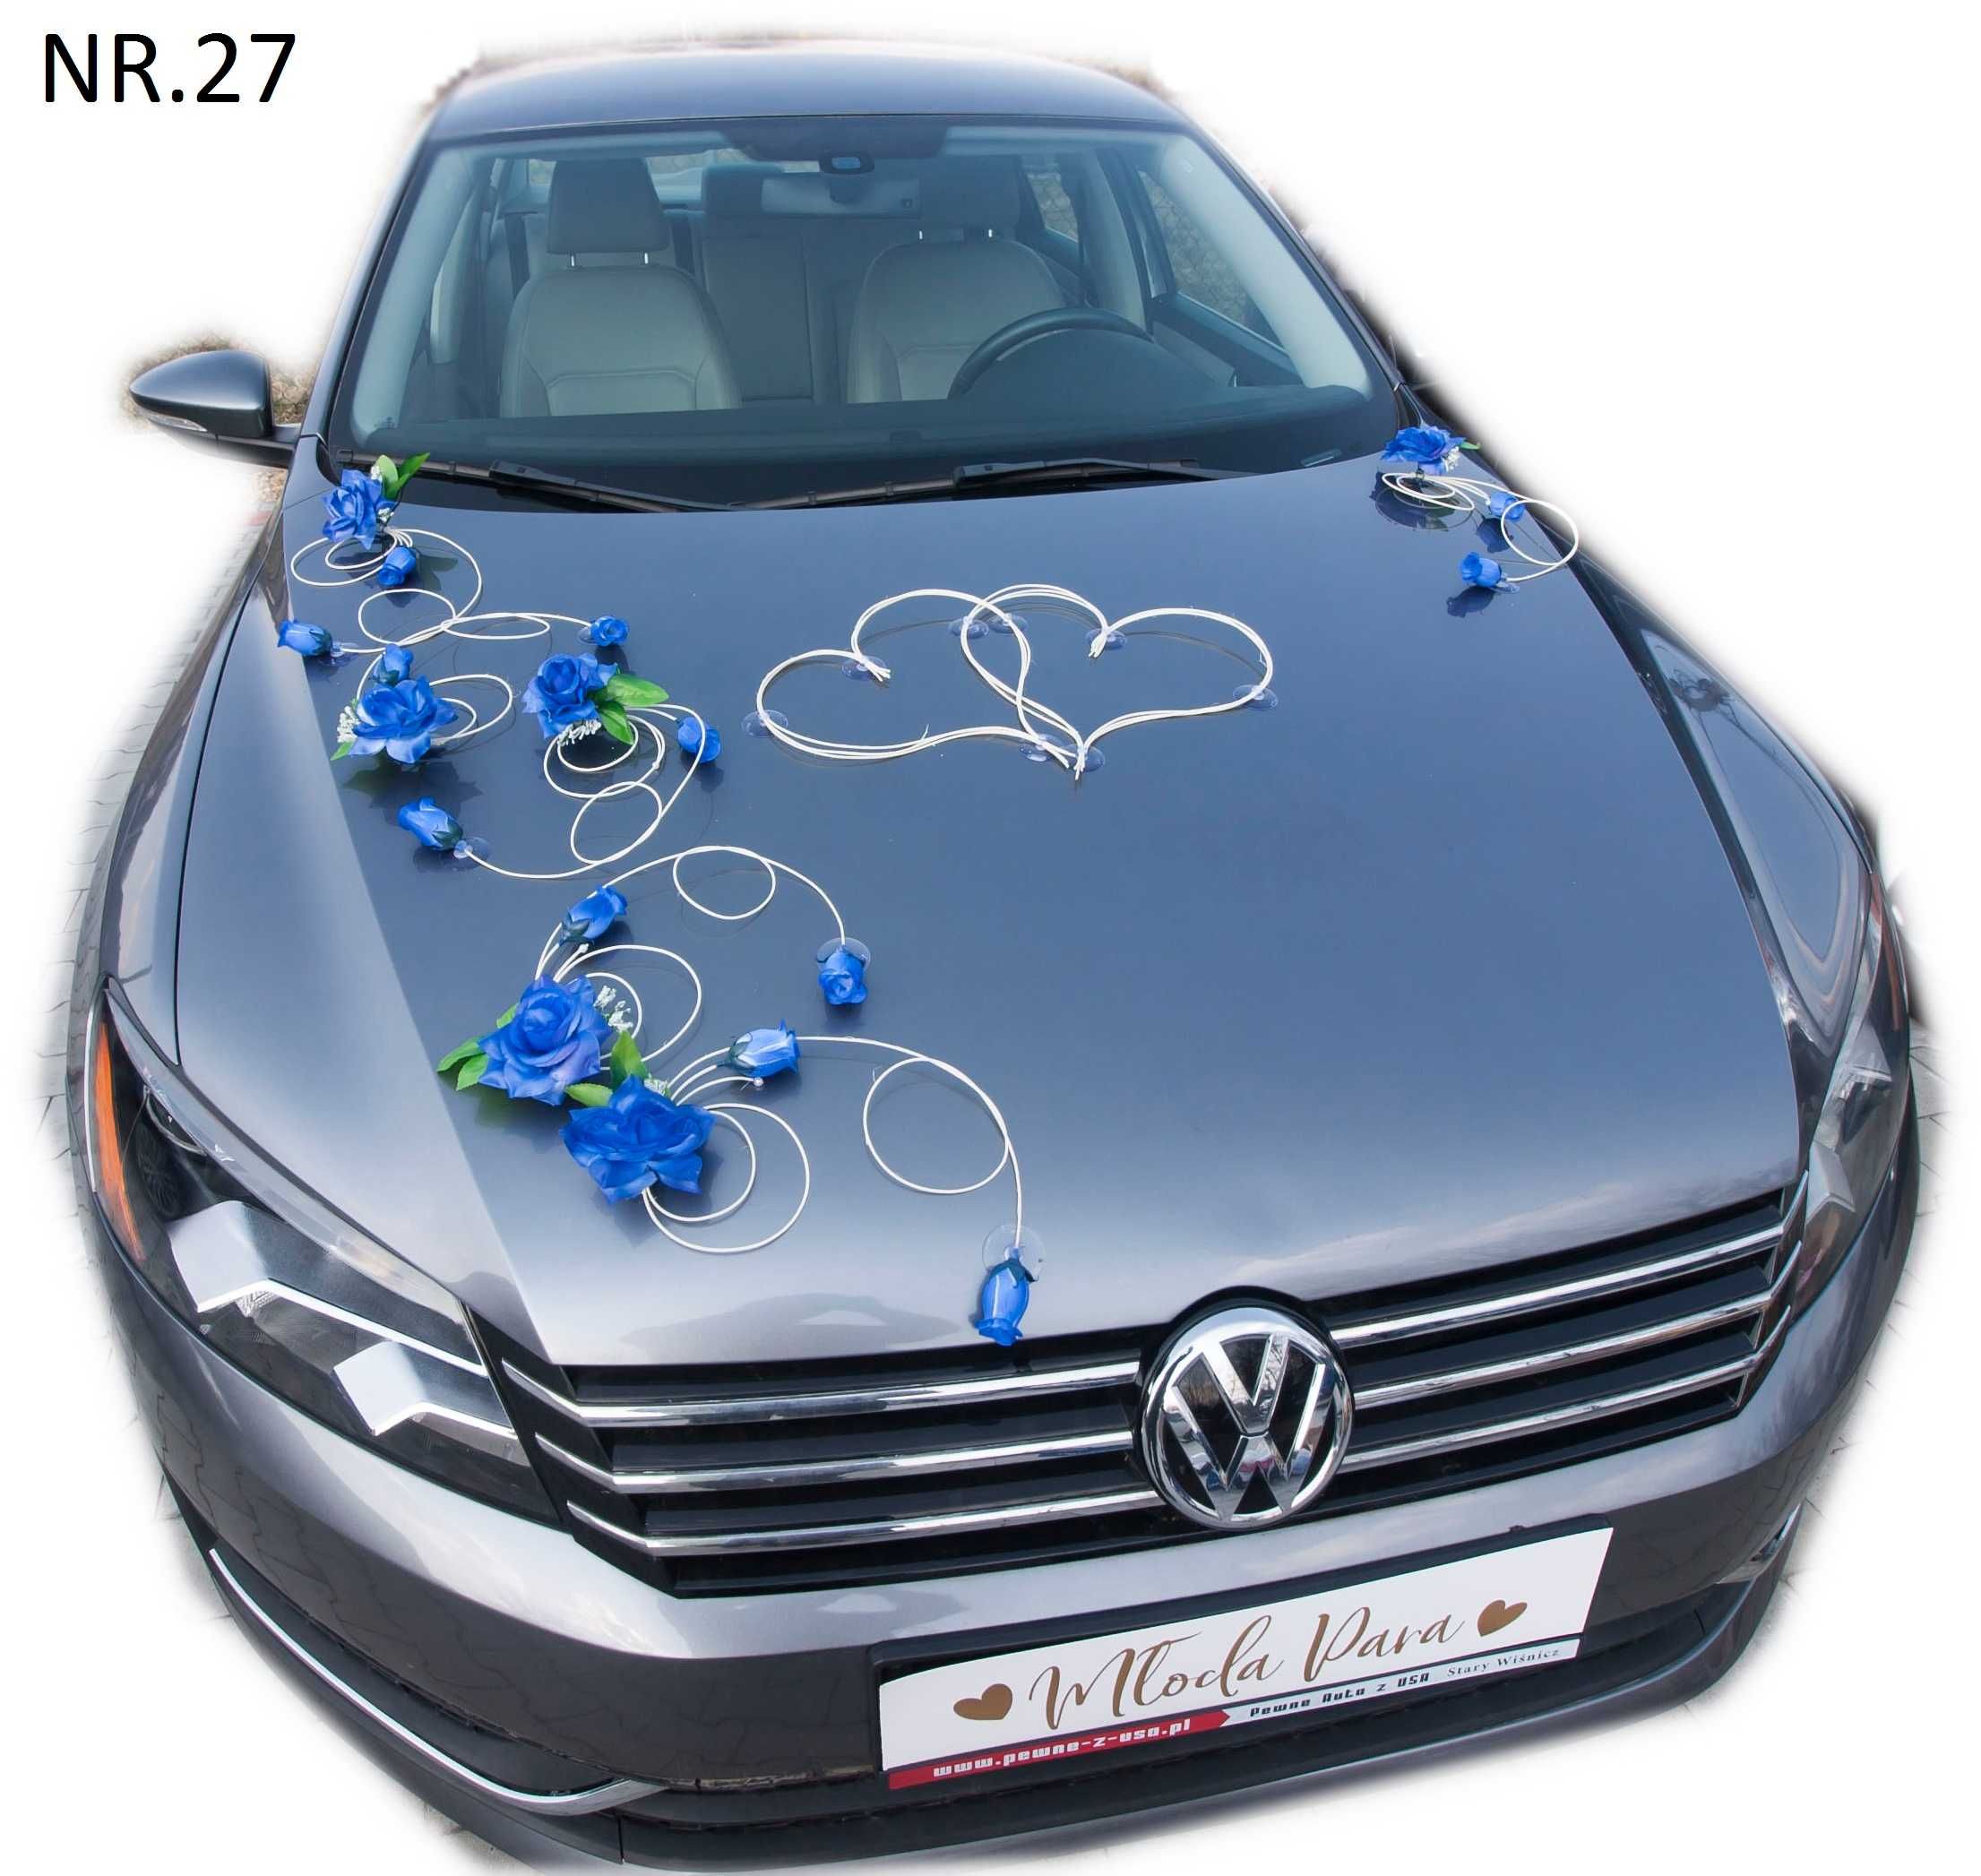 Dekoracja samochodu ozdoby na auto do ślubu.Niebieskie róże 027